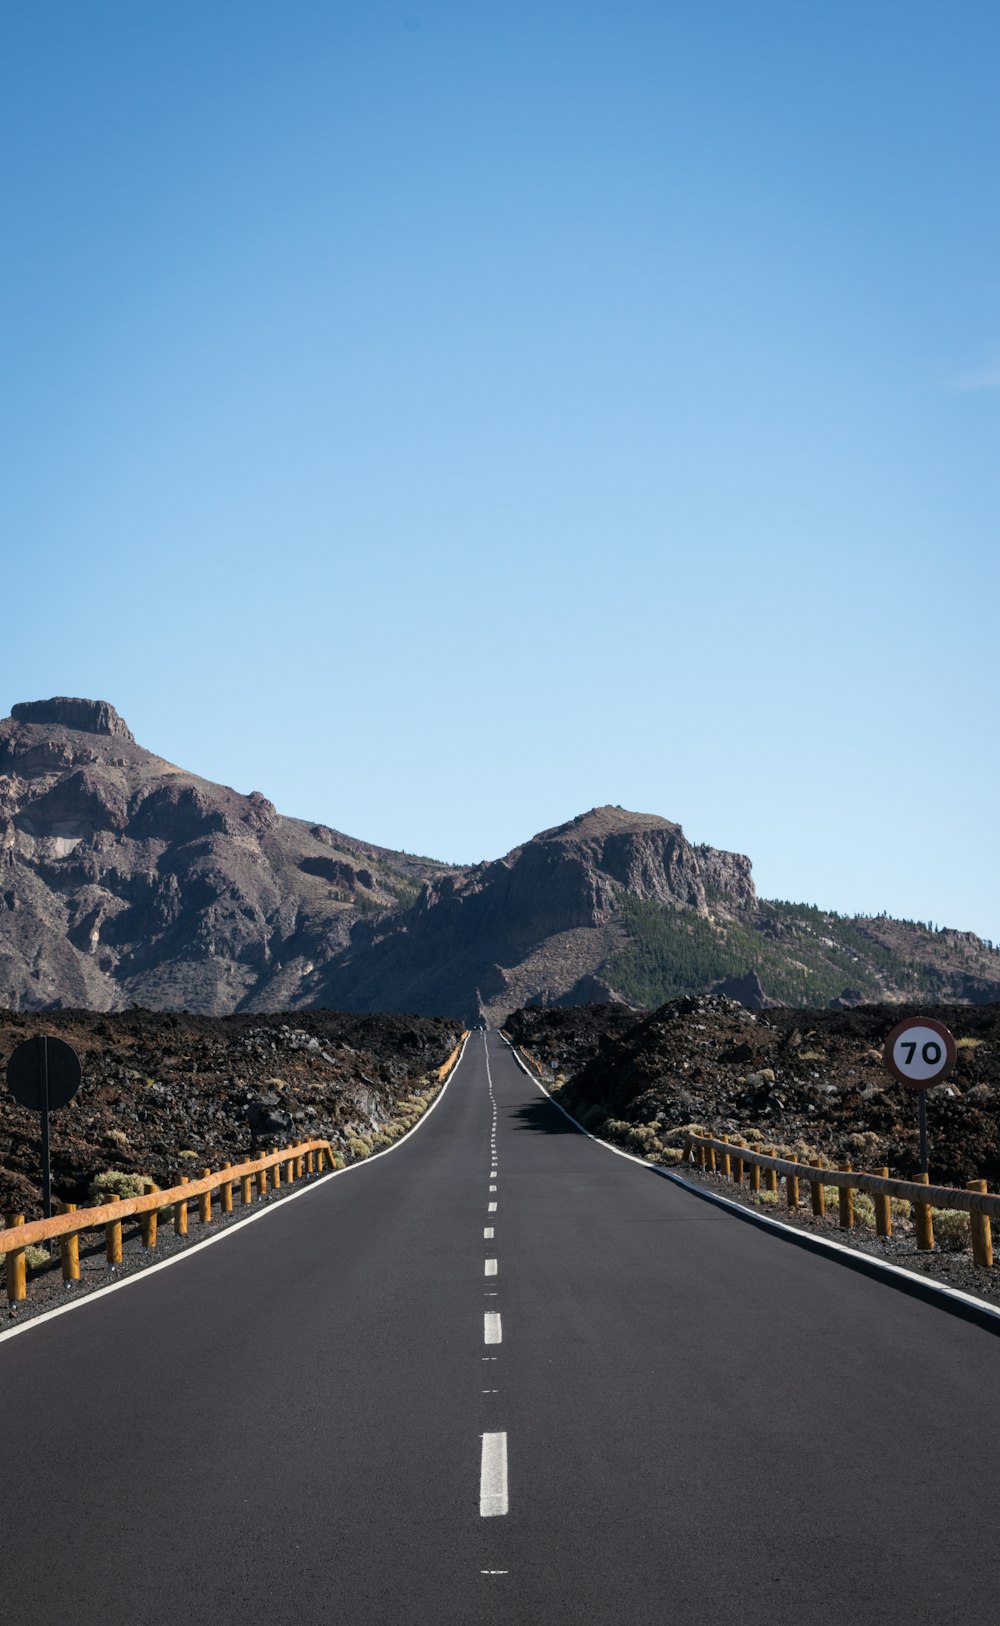 strada asfaltata diritta con sfondo di montagna